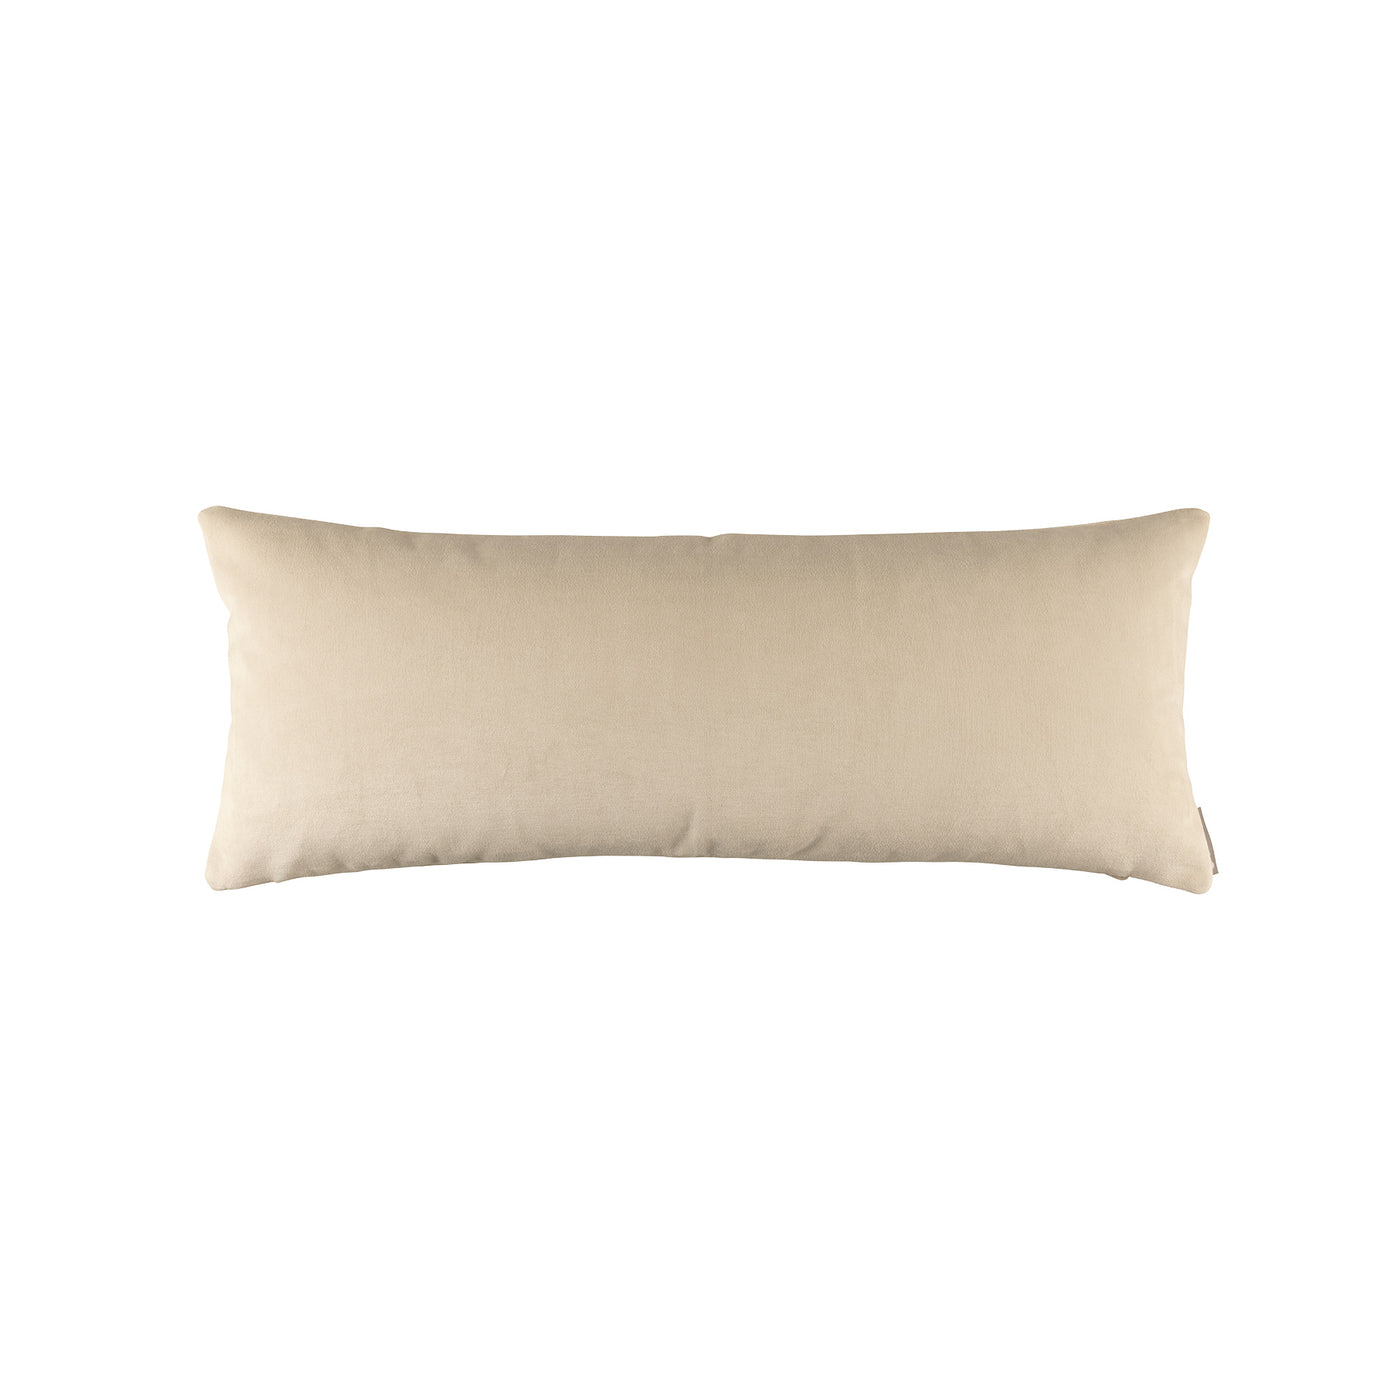 Mia Ivory Long Rectangle Pillow (18x46)